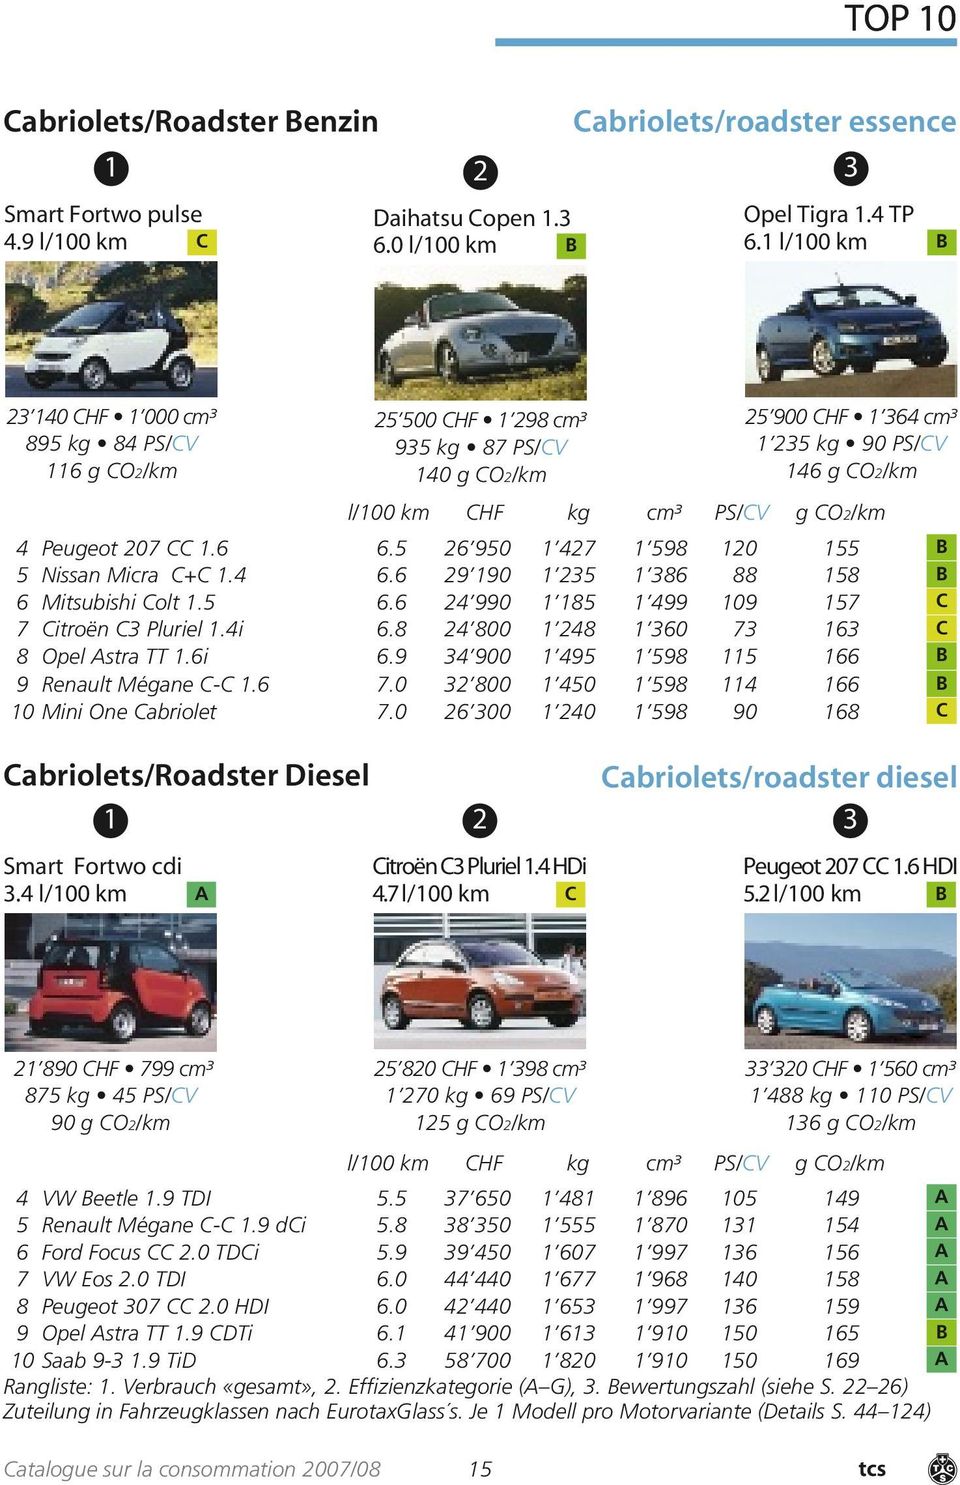 4 Peugeot 207 CC 1.6 6.5 26 950 1 427 1 598 120 155 B 5 Nissan Micra C+C 1.4 6.6 29 190 1 235 1 386 88 158 B 6 Mitsubishi Colt 1.5 6.6 24 990 1 185 1 499 109 157 C 7 Citroën C3 Pluriel 1.4i 6.